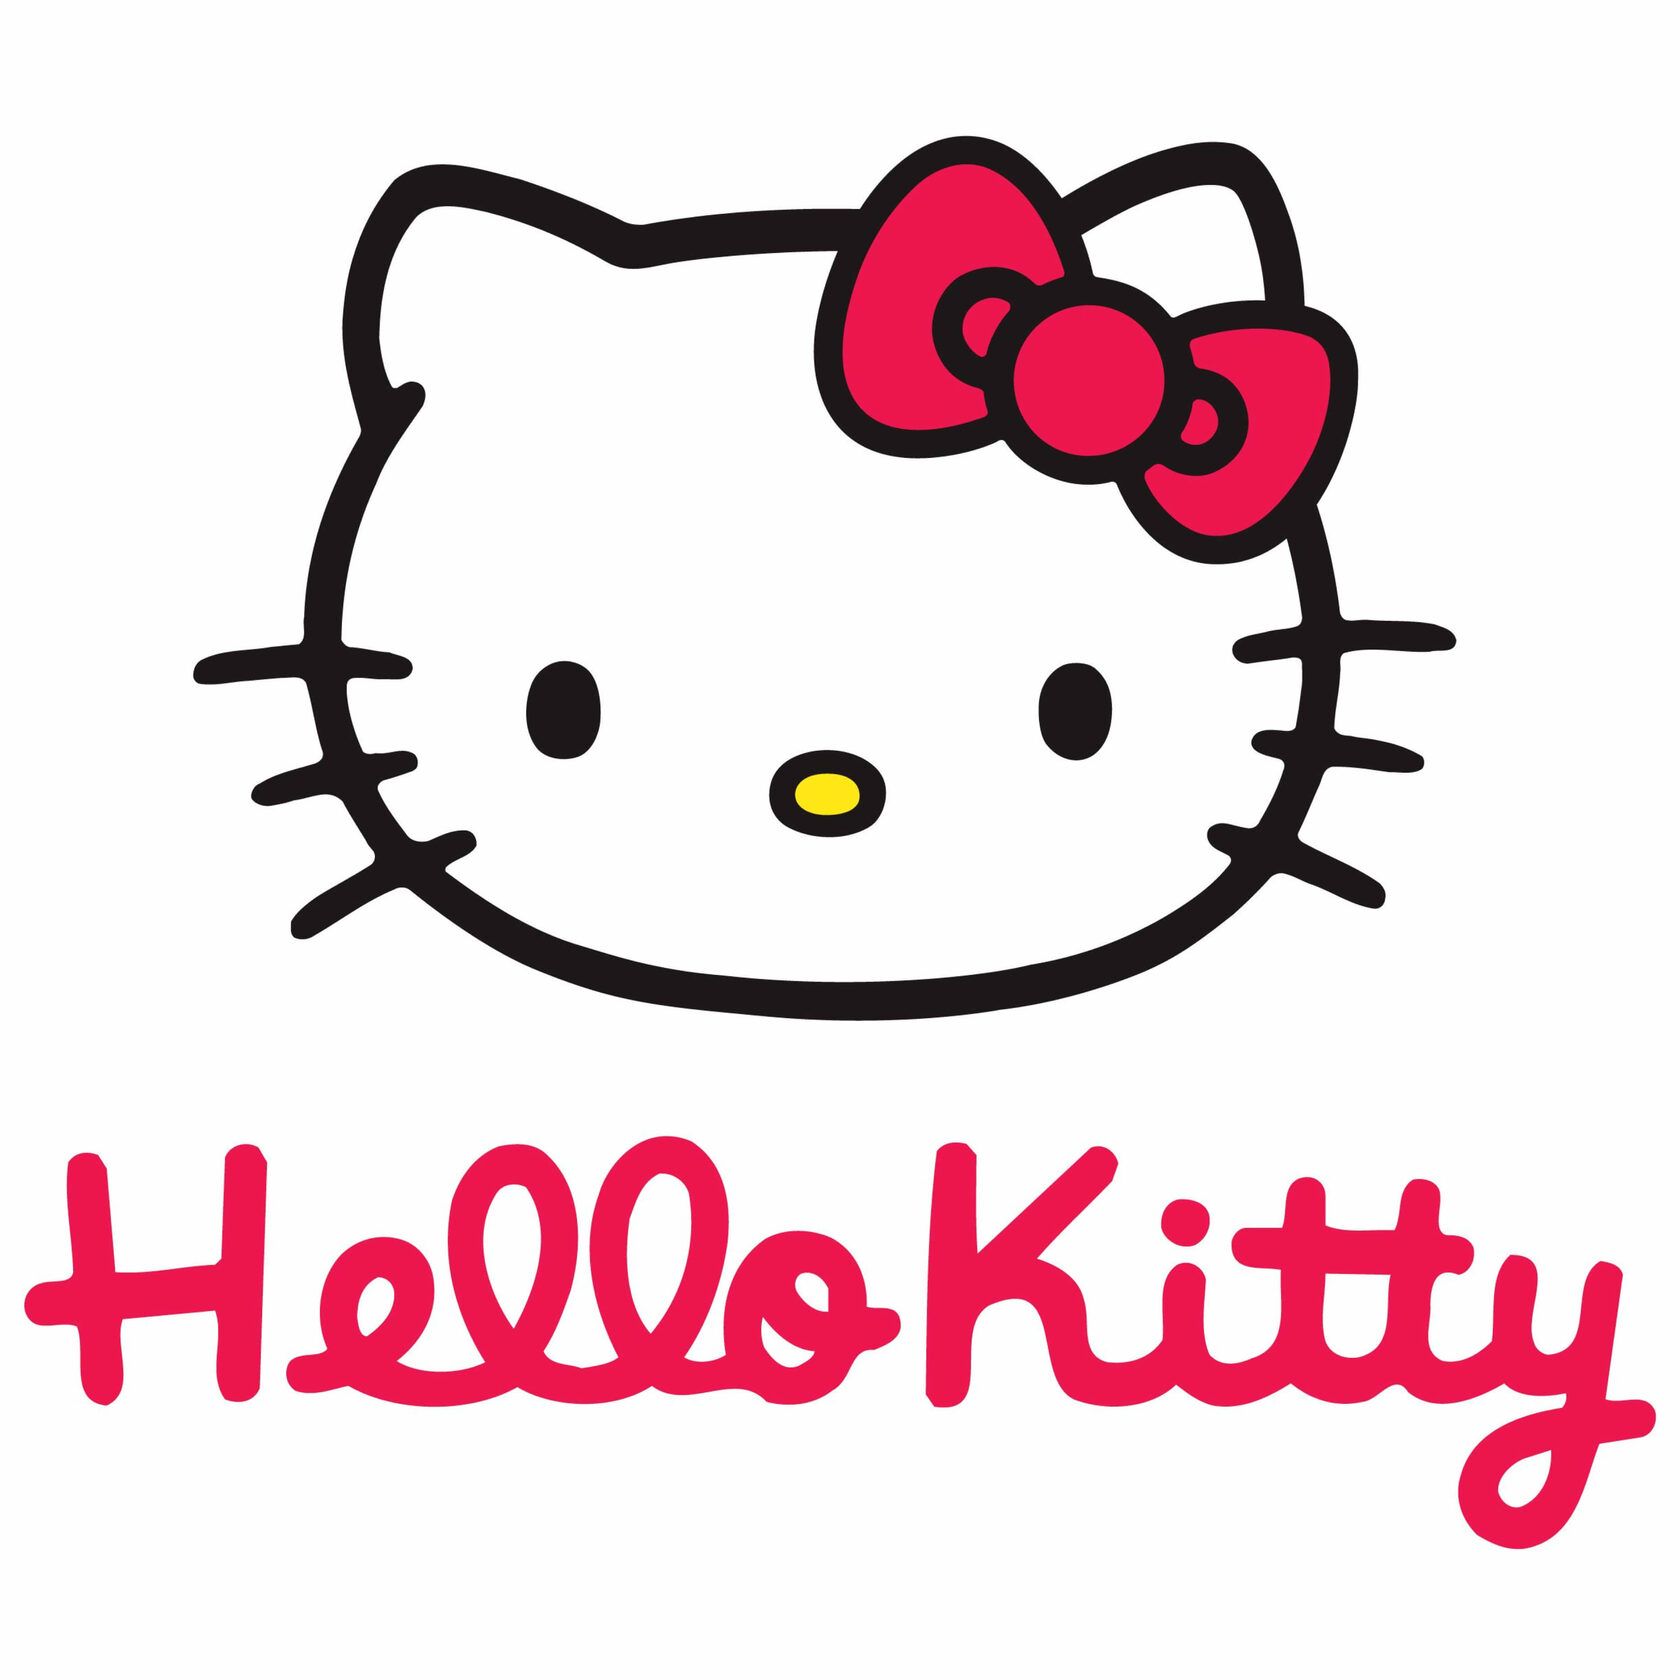 Хелло ю. Хэллоу Китти. Хеллоу Китти hello Kitty hello Kitty. Хэллоу Китти эмблема. Hello Kitty бренд.